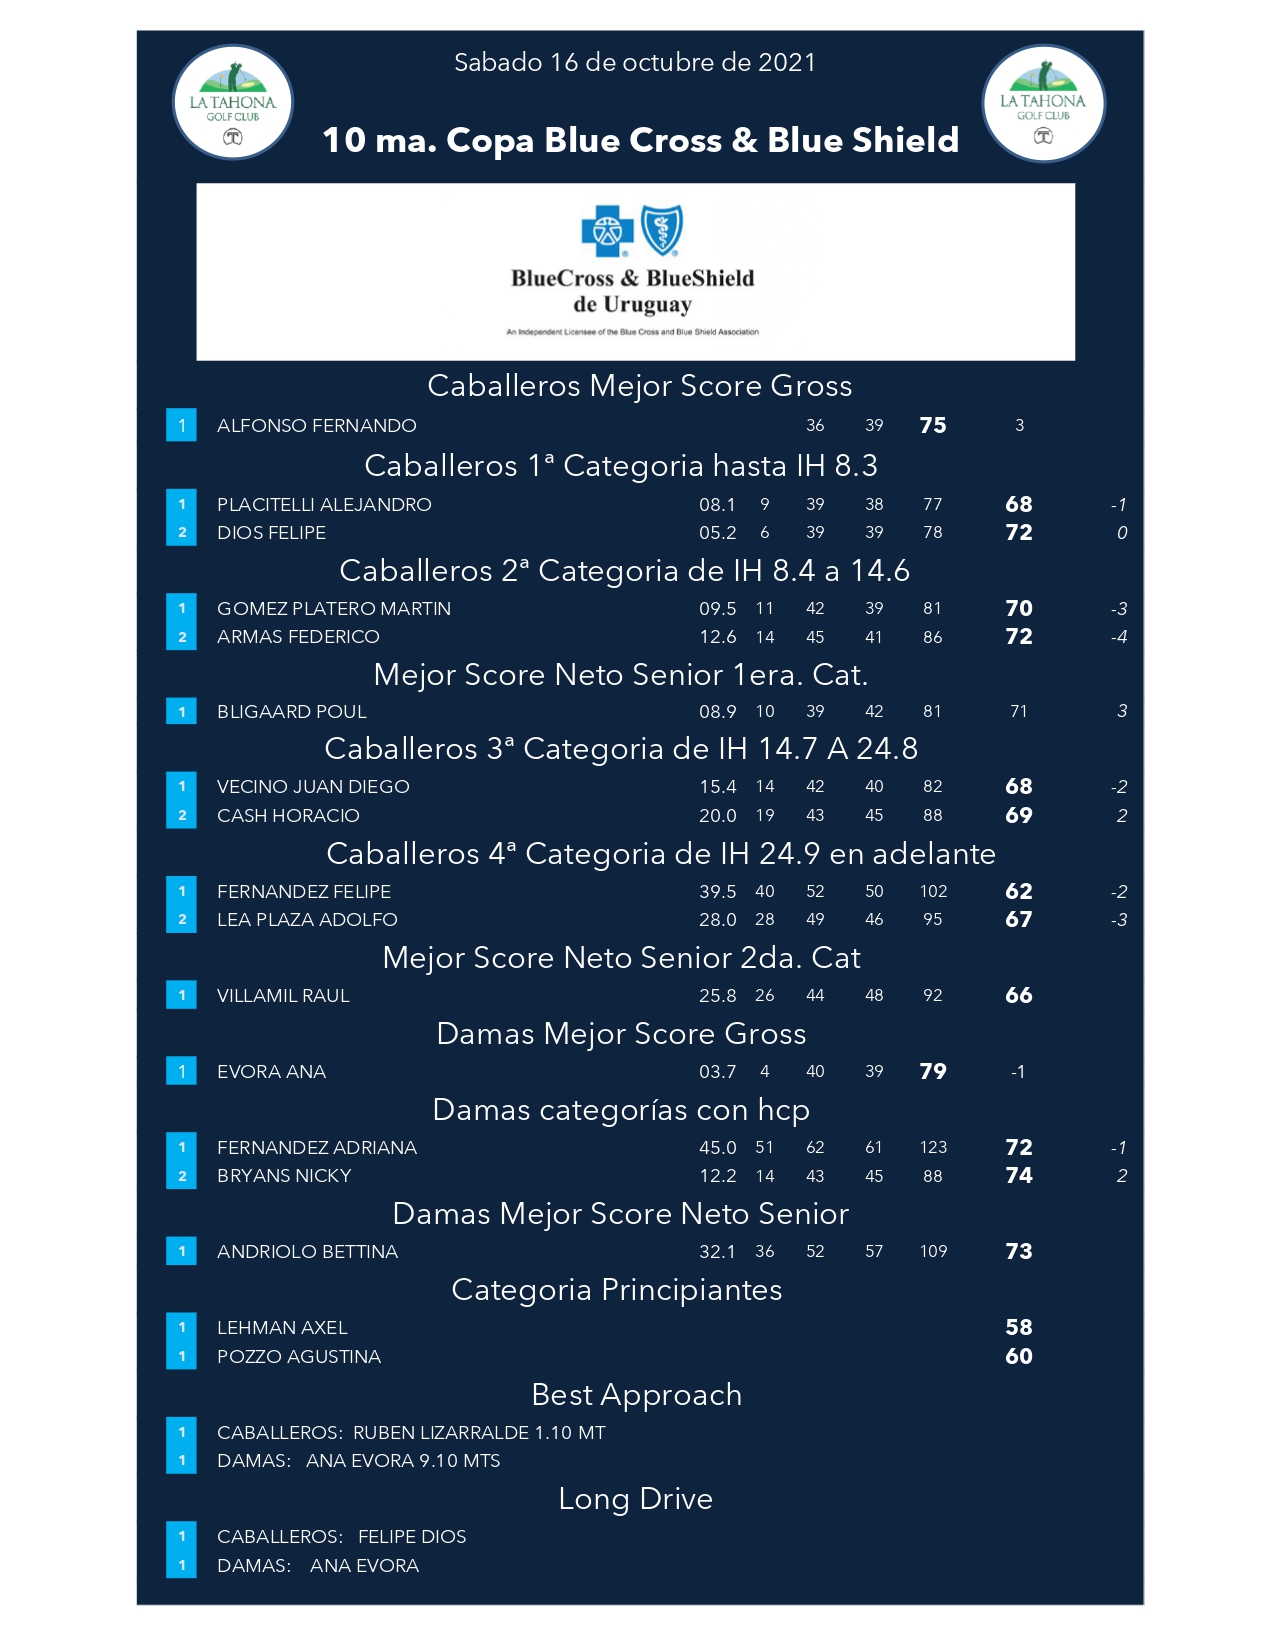 10 ma. Copa BlueCross & BlueShield de Uruguay - Resultados Generales por Categora